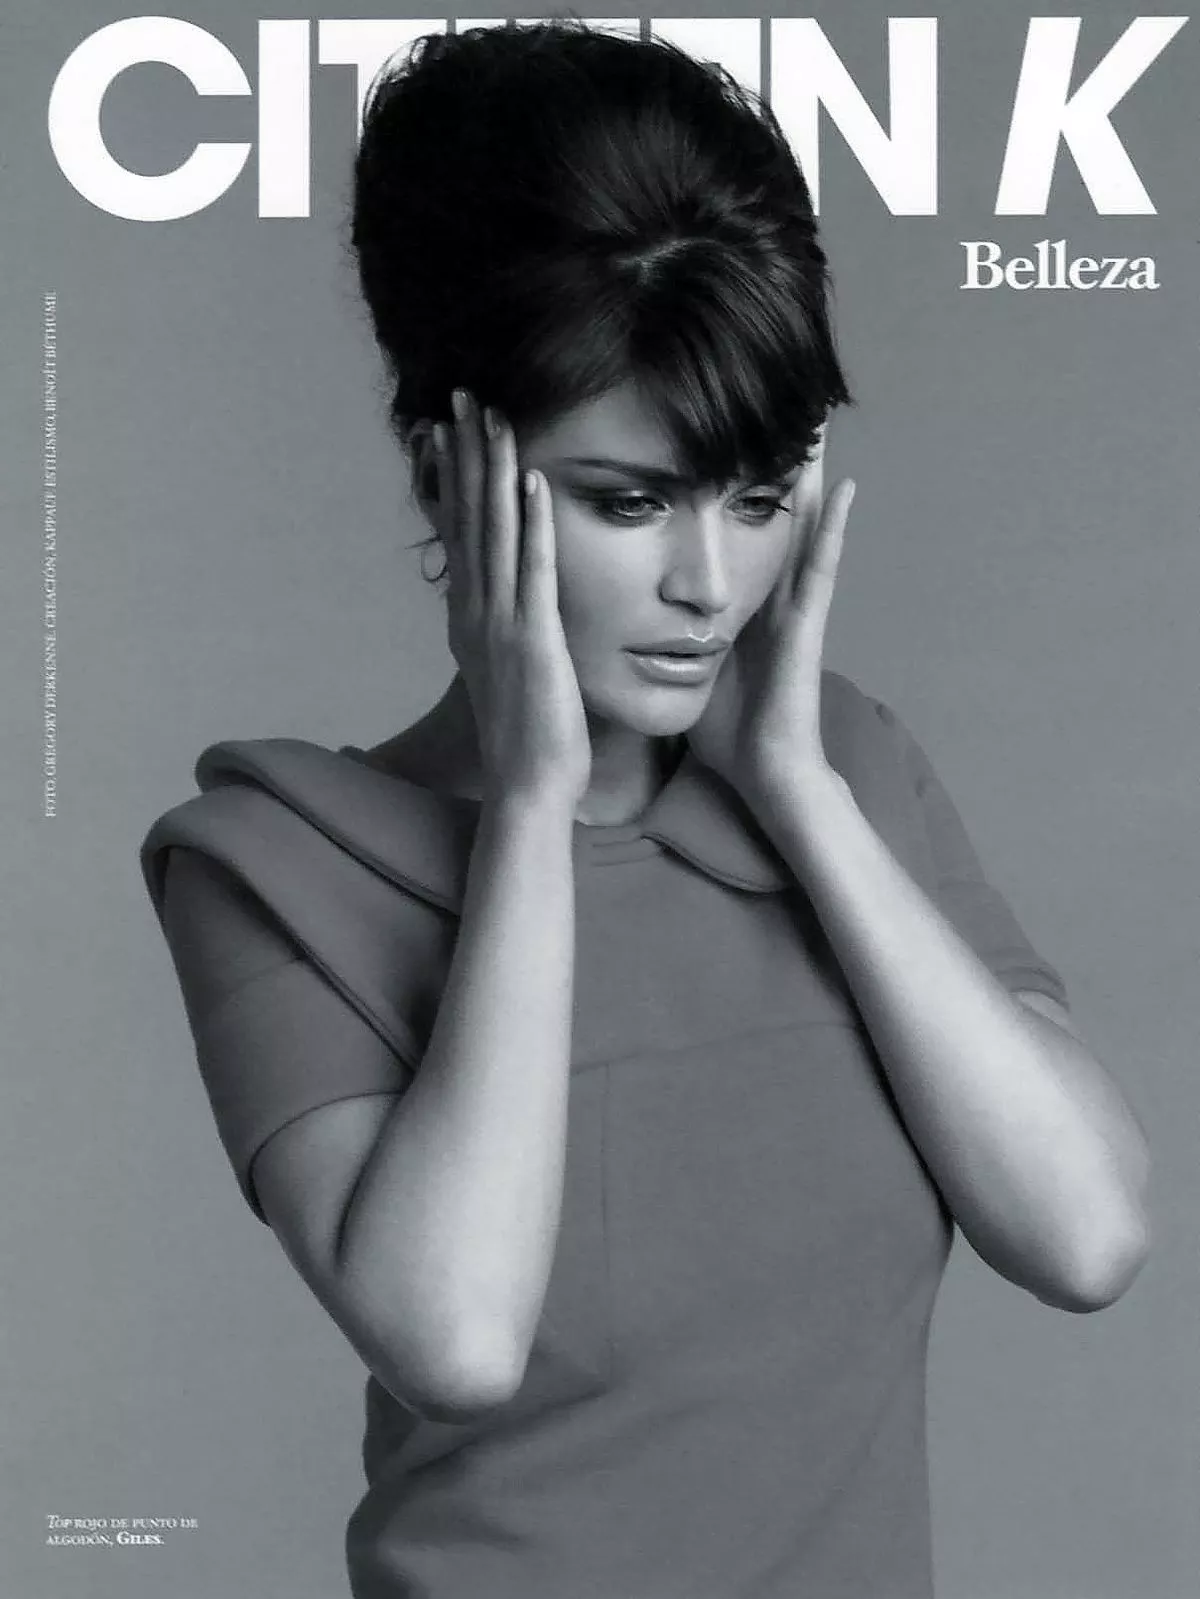 Хелена Кристенсен на обложке журнала Citizen K Spain